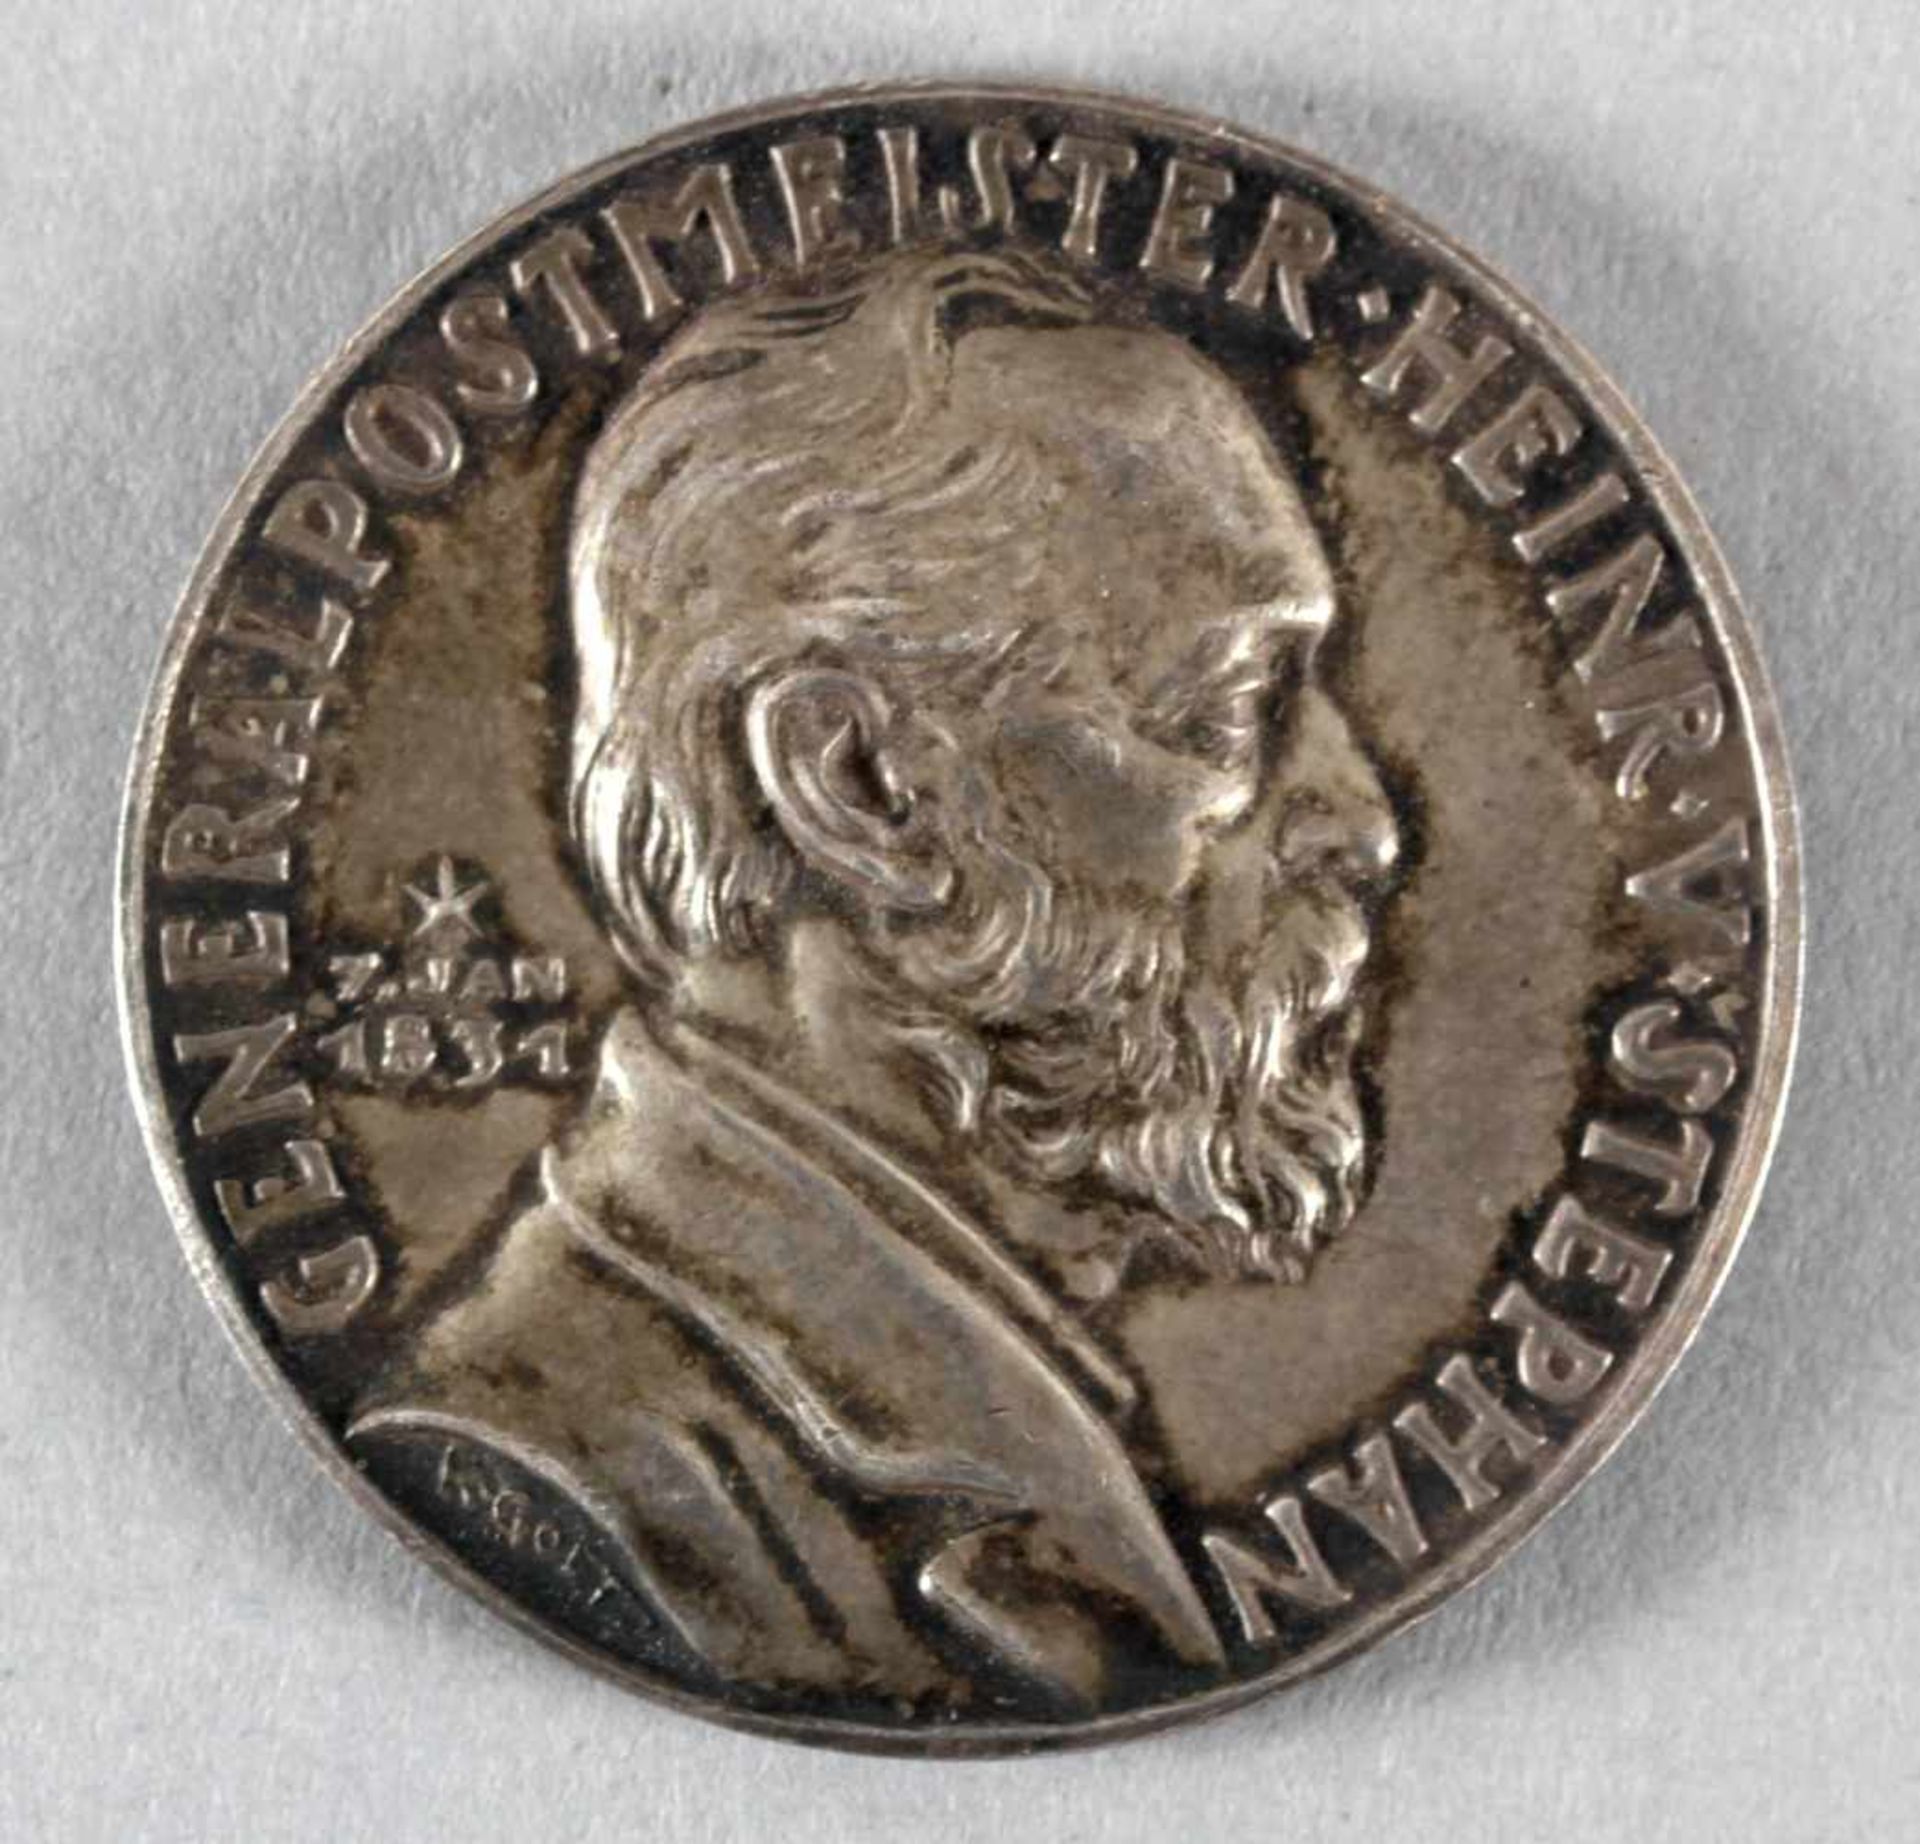 Silbermedaille Generalpostmeister v. Stephan, 1931